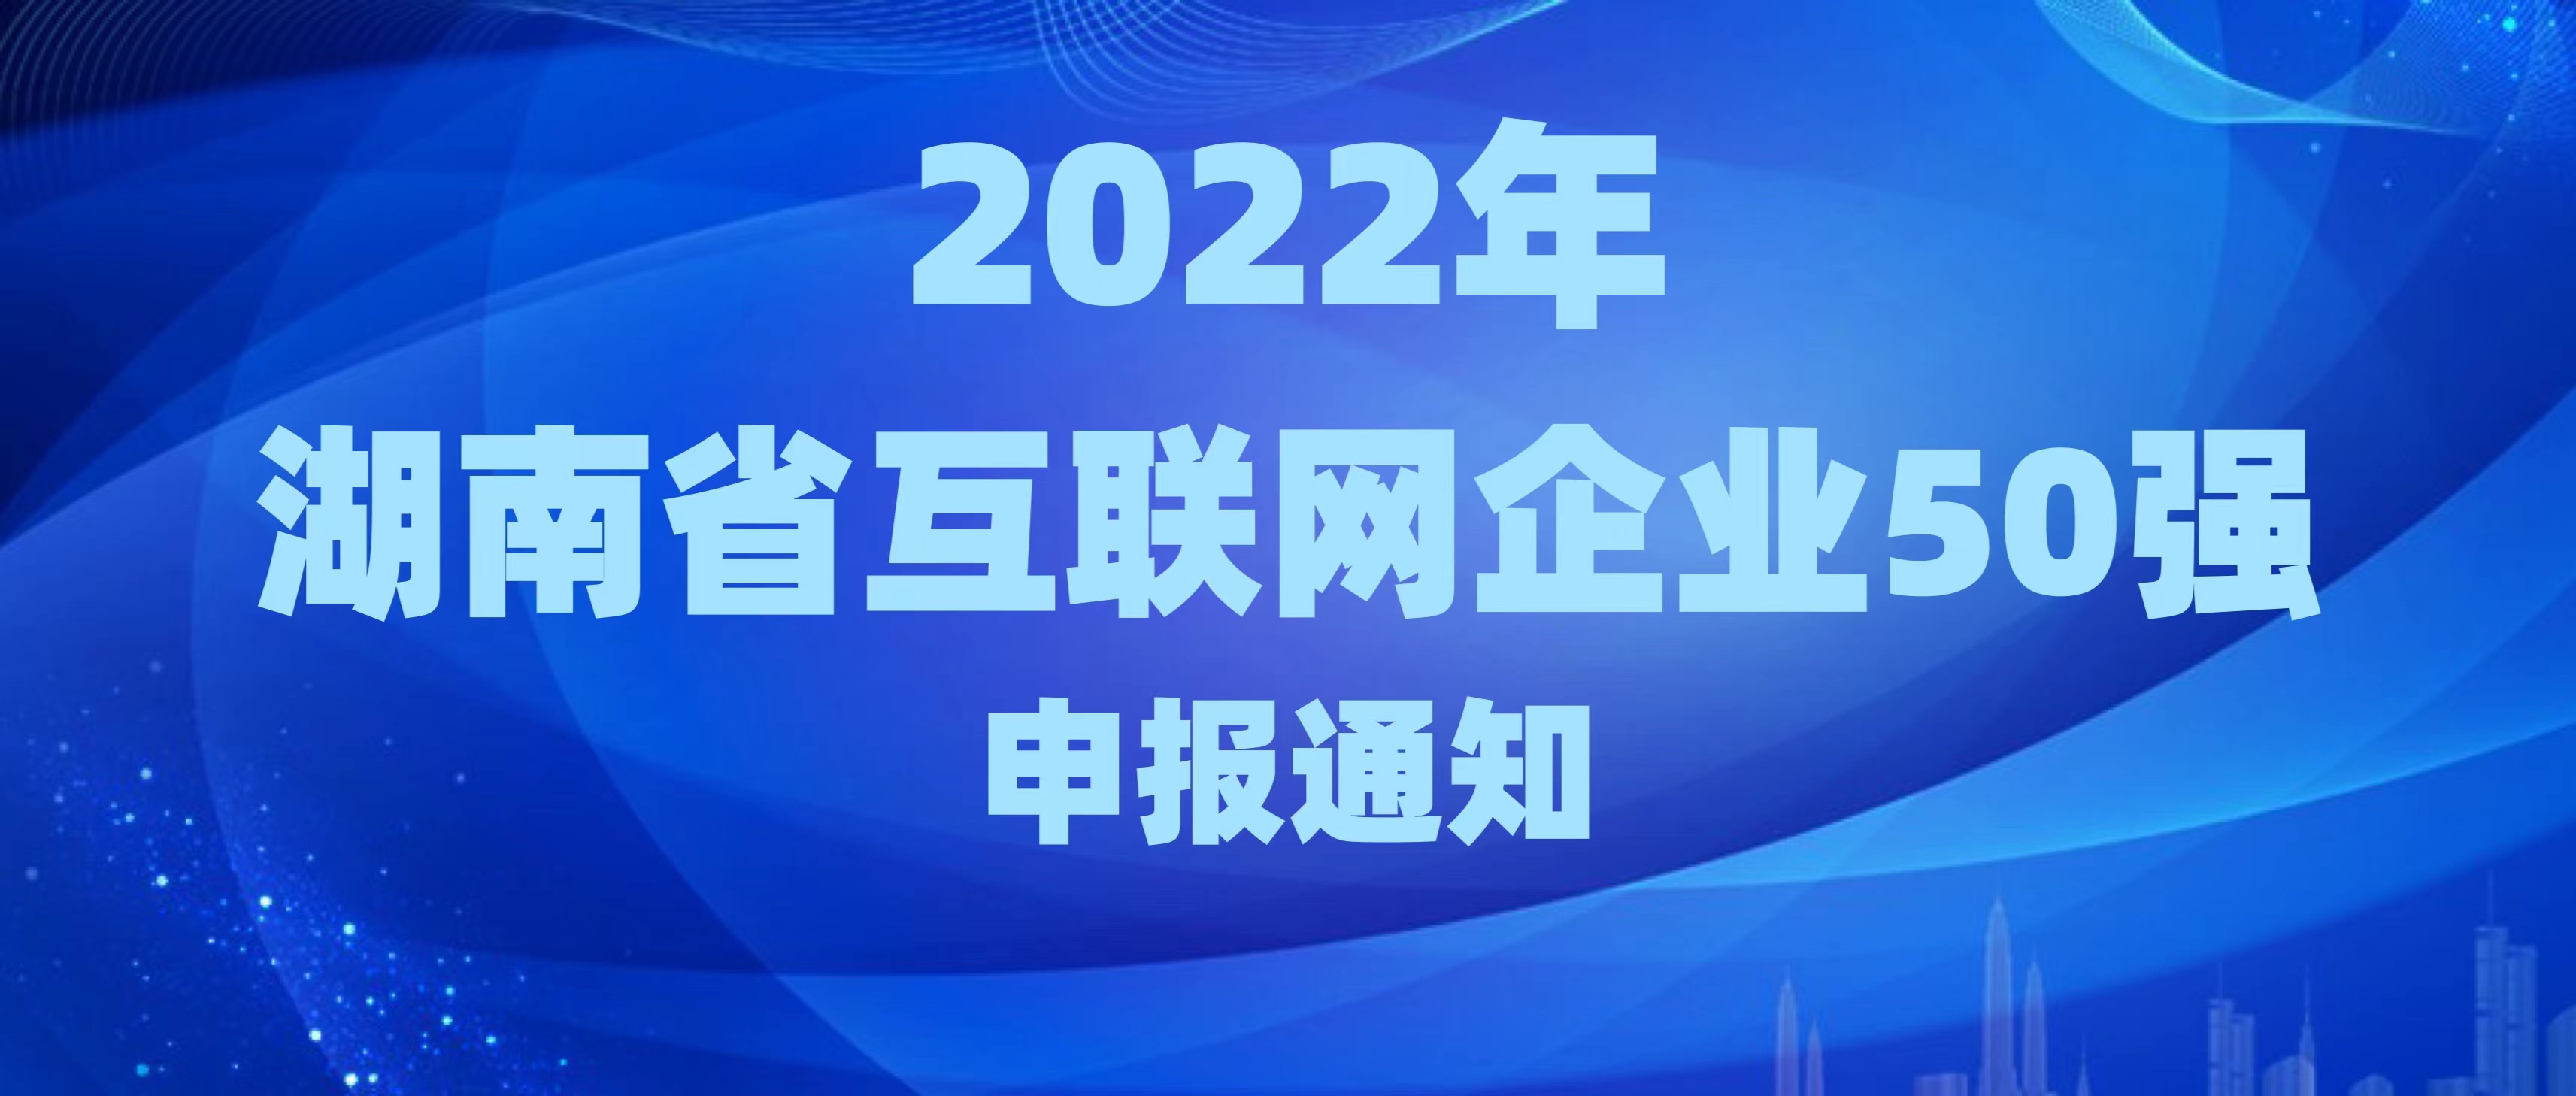 关于申报2022年湖南省互联网企业50强的通知